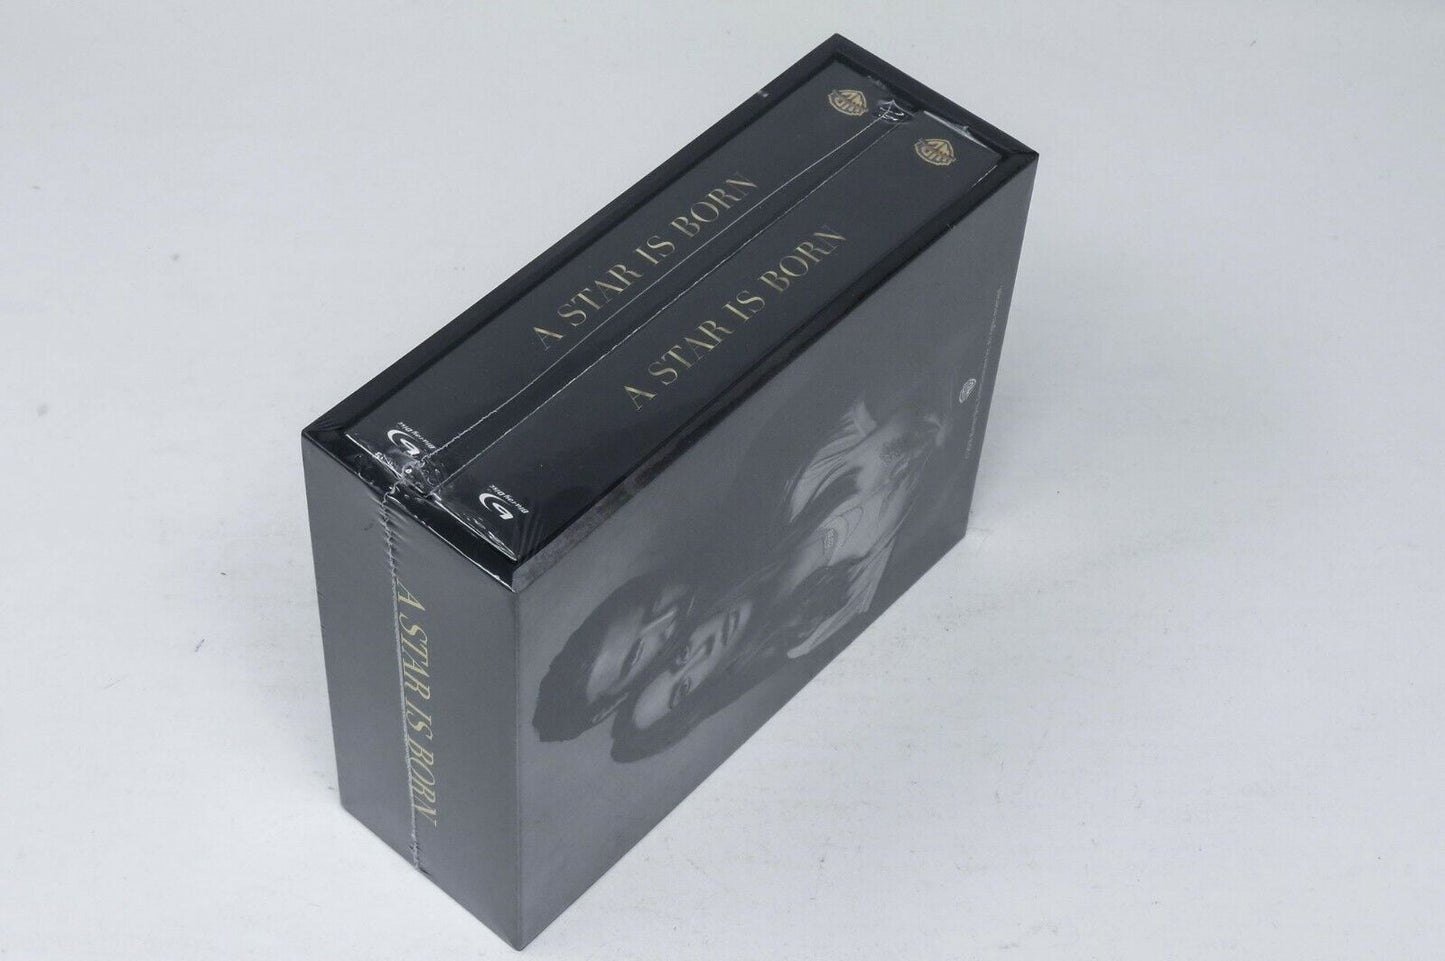 A Star is Born Blu-ray SteelBook HDZeta Silver Label Box Set